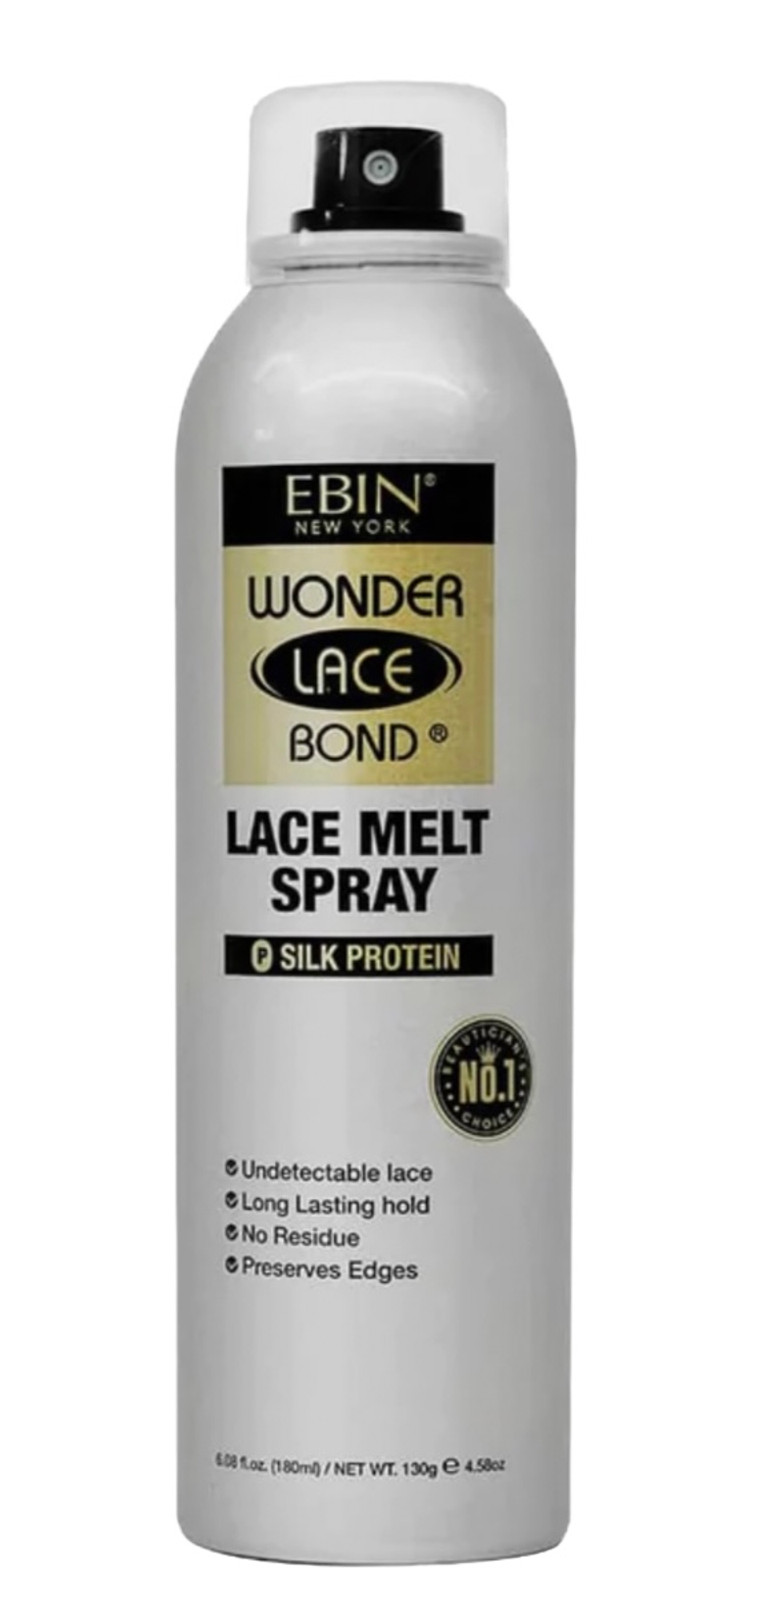 Ebin New York Wonder Lace Bond Melt Spray (Silk Protein)